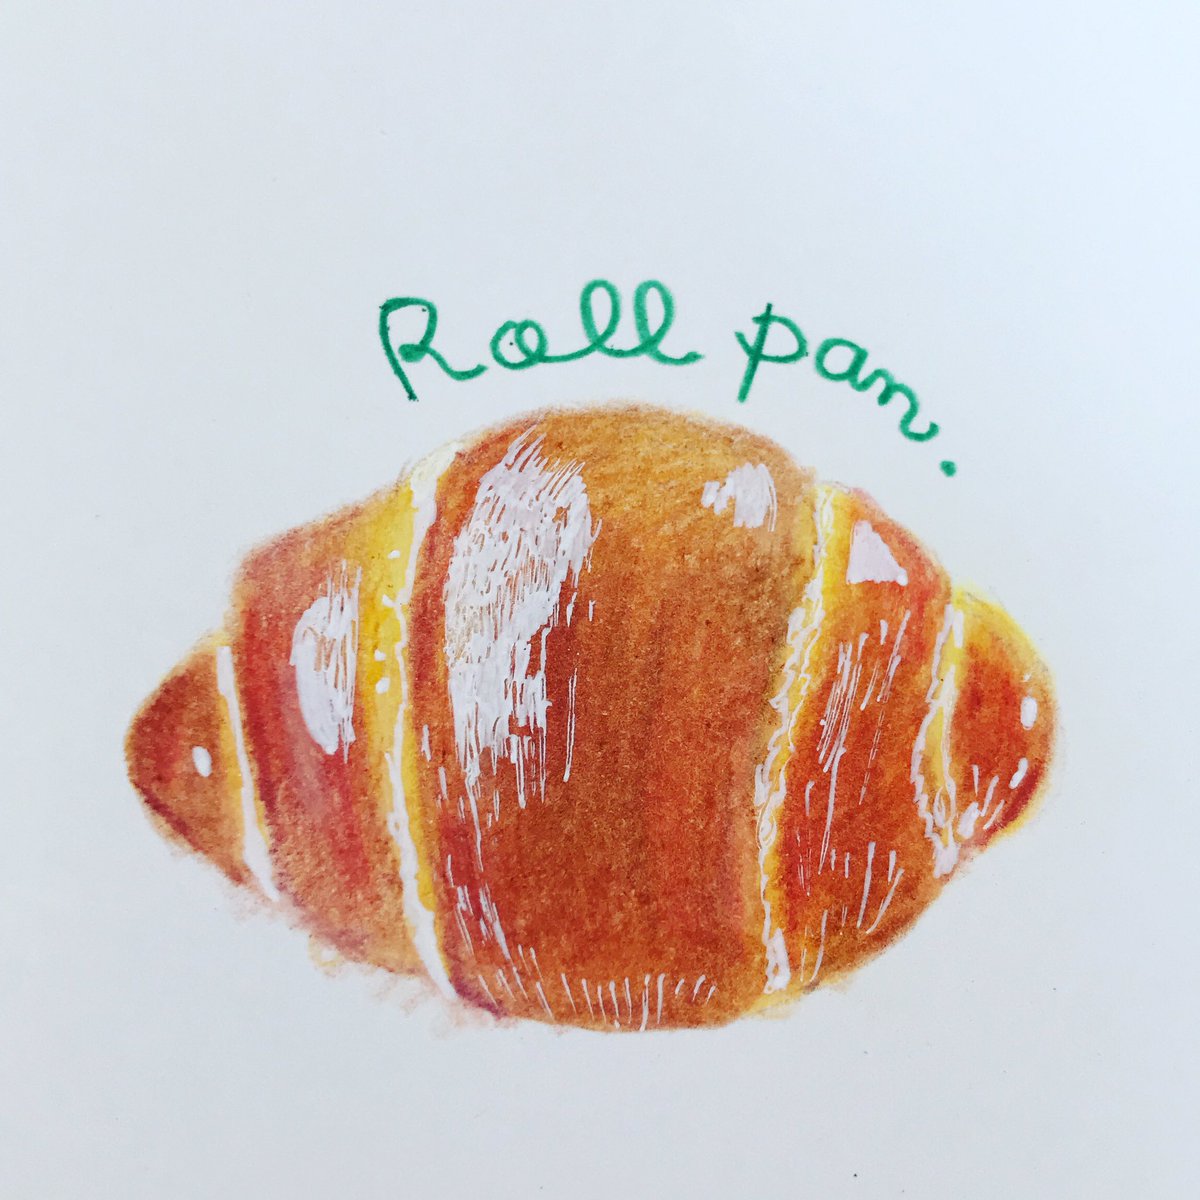 Rica Tasaka Roll Pan ふかふかのロールパンが たべたい イラスト イラストグラム イラスト好きな人と繋がりたい 1日1絵 パン パンイラスト ロールパン 好きな人と繋がりたい パン好きな人と繋がりたい パン作り Illustrator